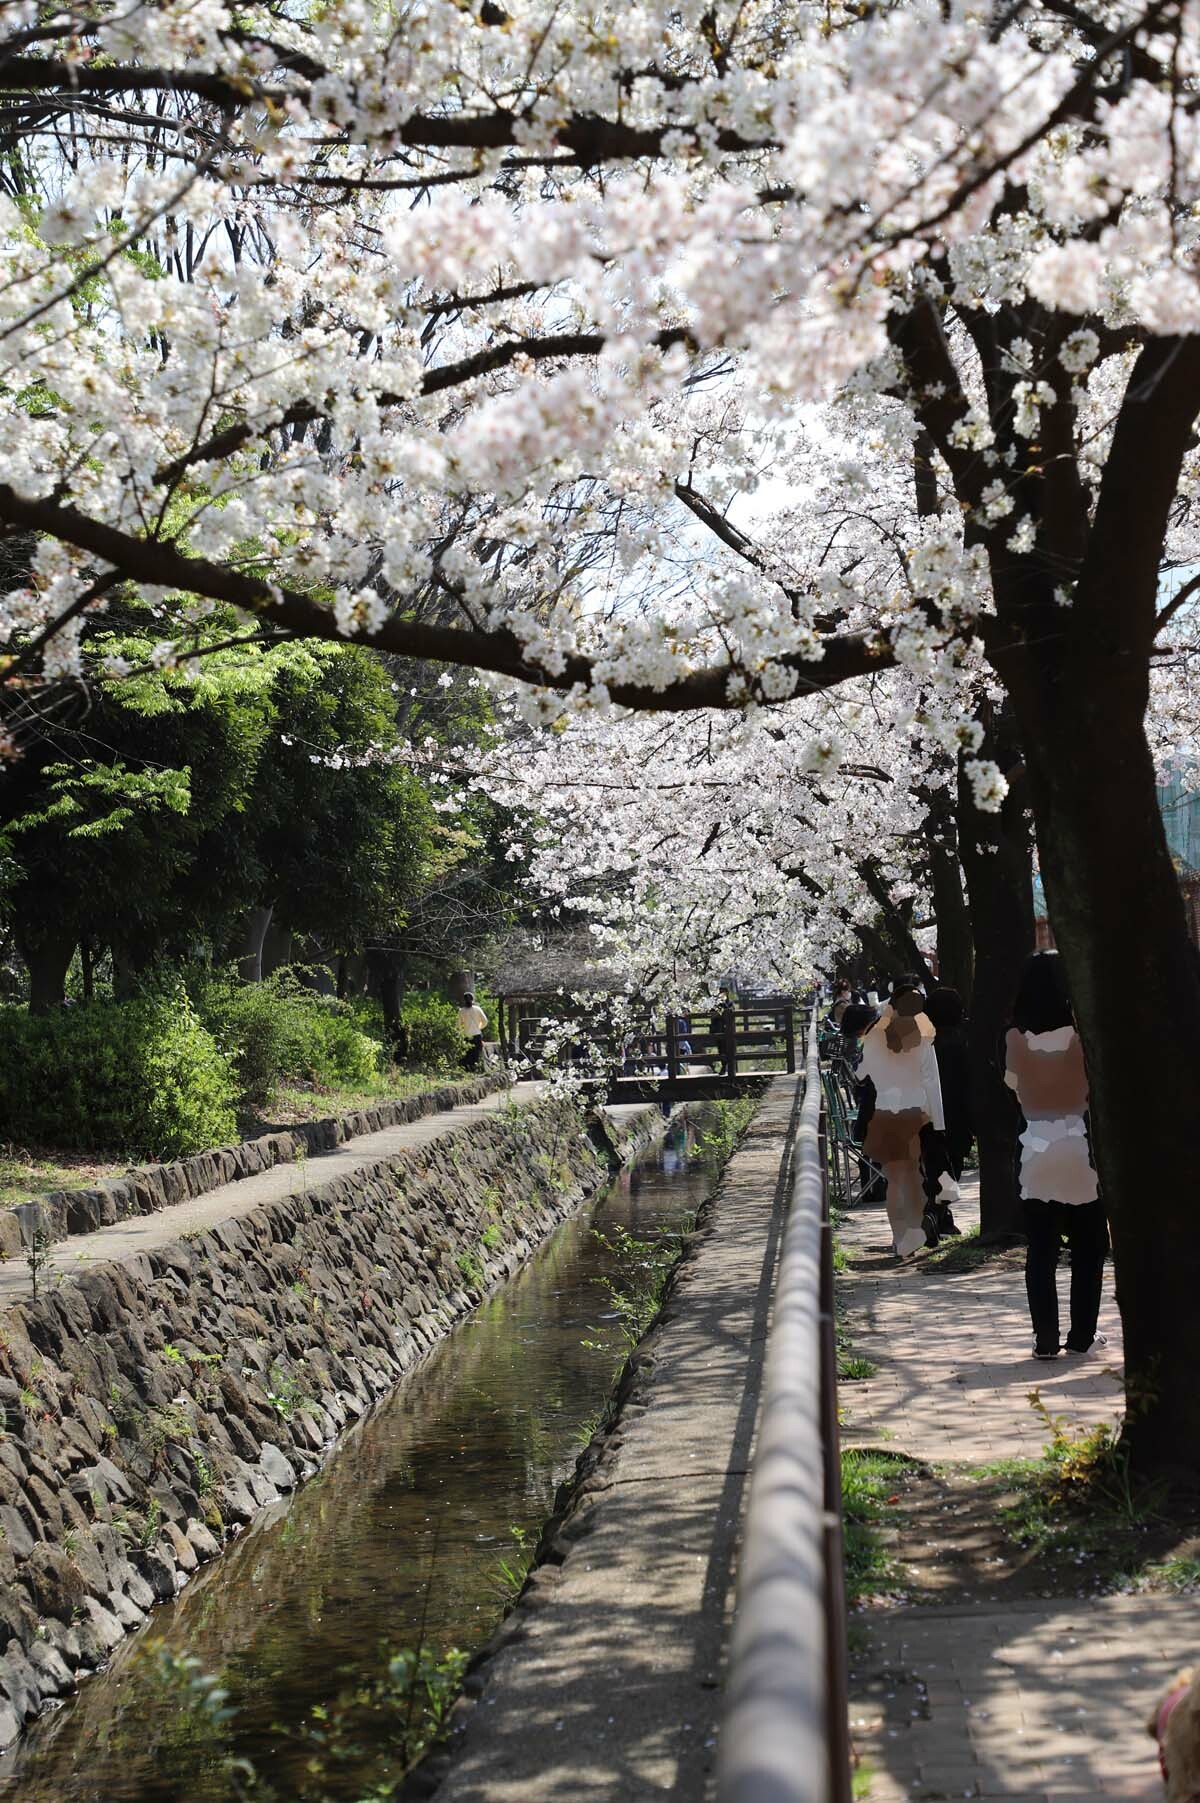 小川沿いの桜です。石垣と川の流れと桜のコントラストが見事です